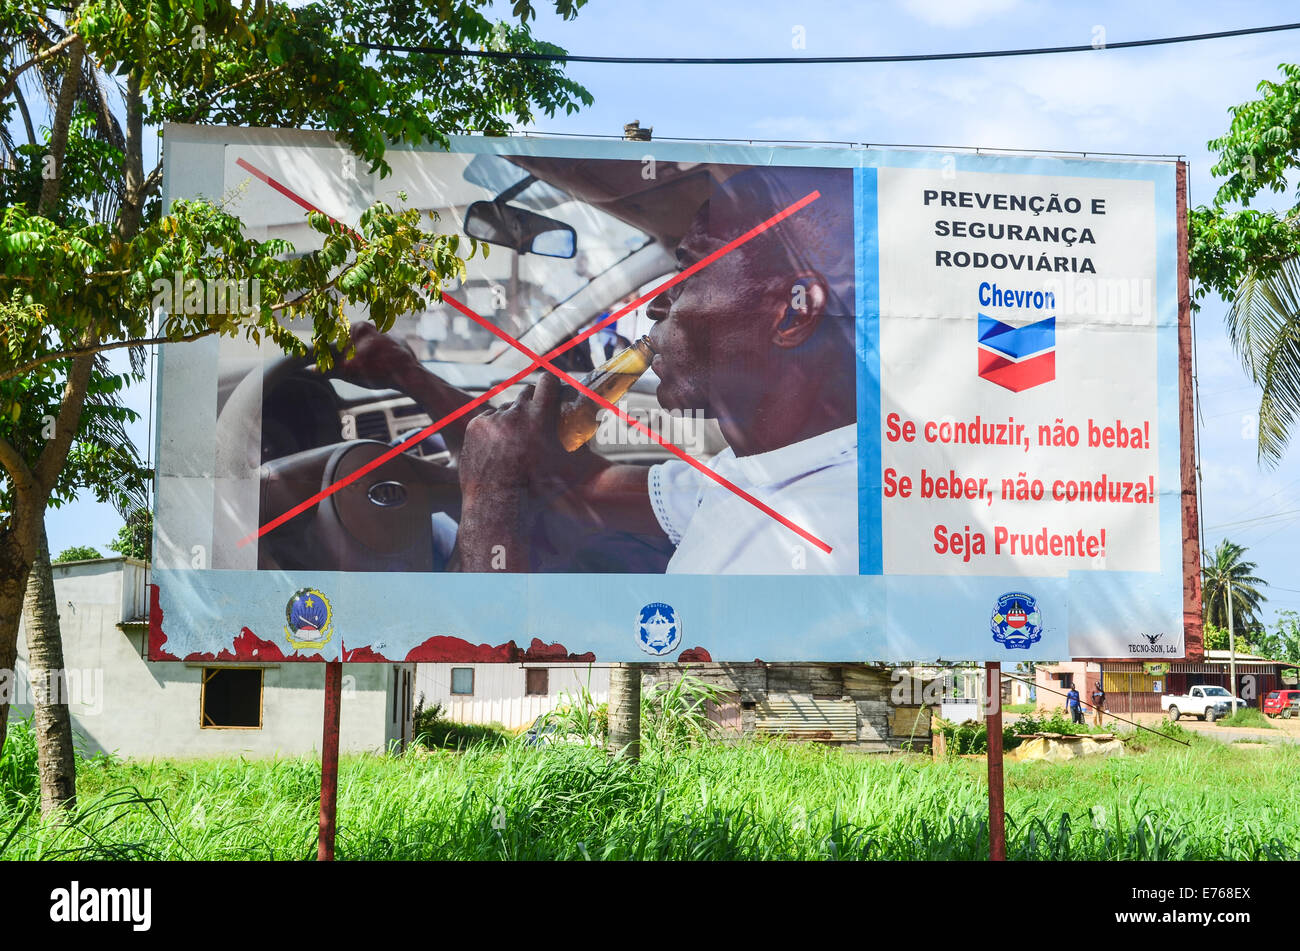 Ein Schild der Prävention durch die American Oil Company Chevron Warnung gegen Trunkenheit am Steuer in Angola, Afrika Stockfoto